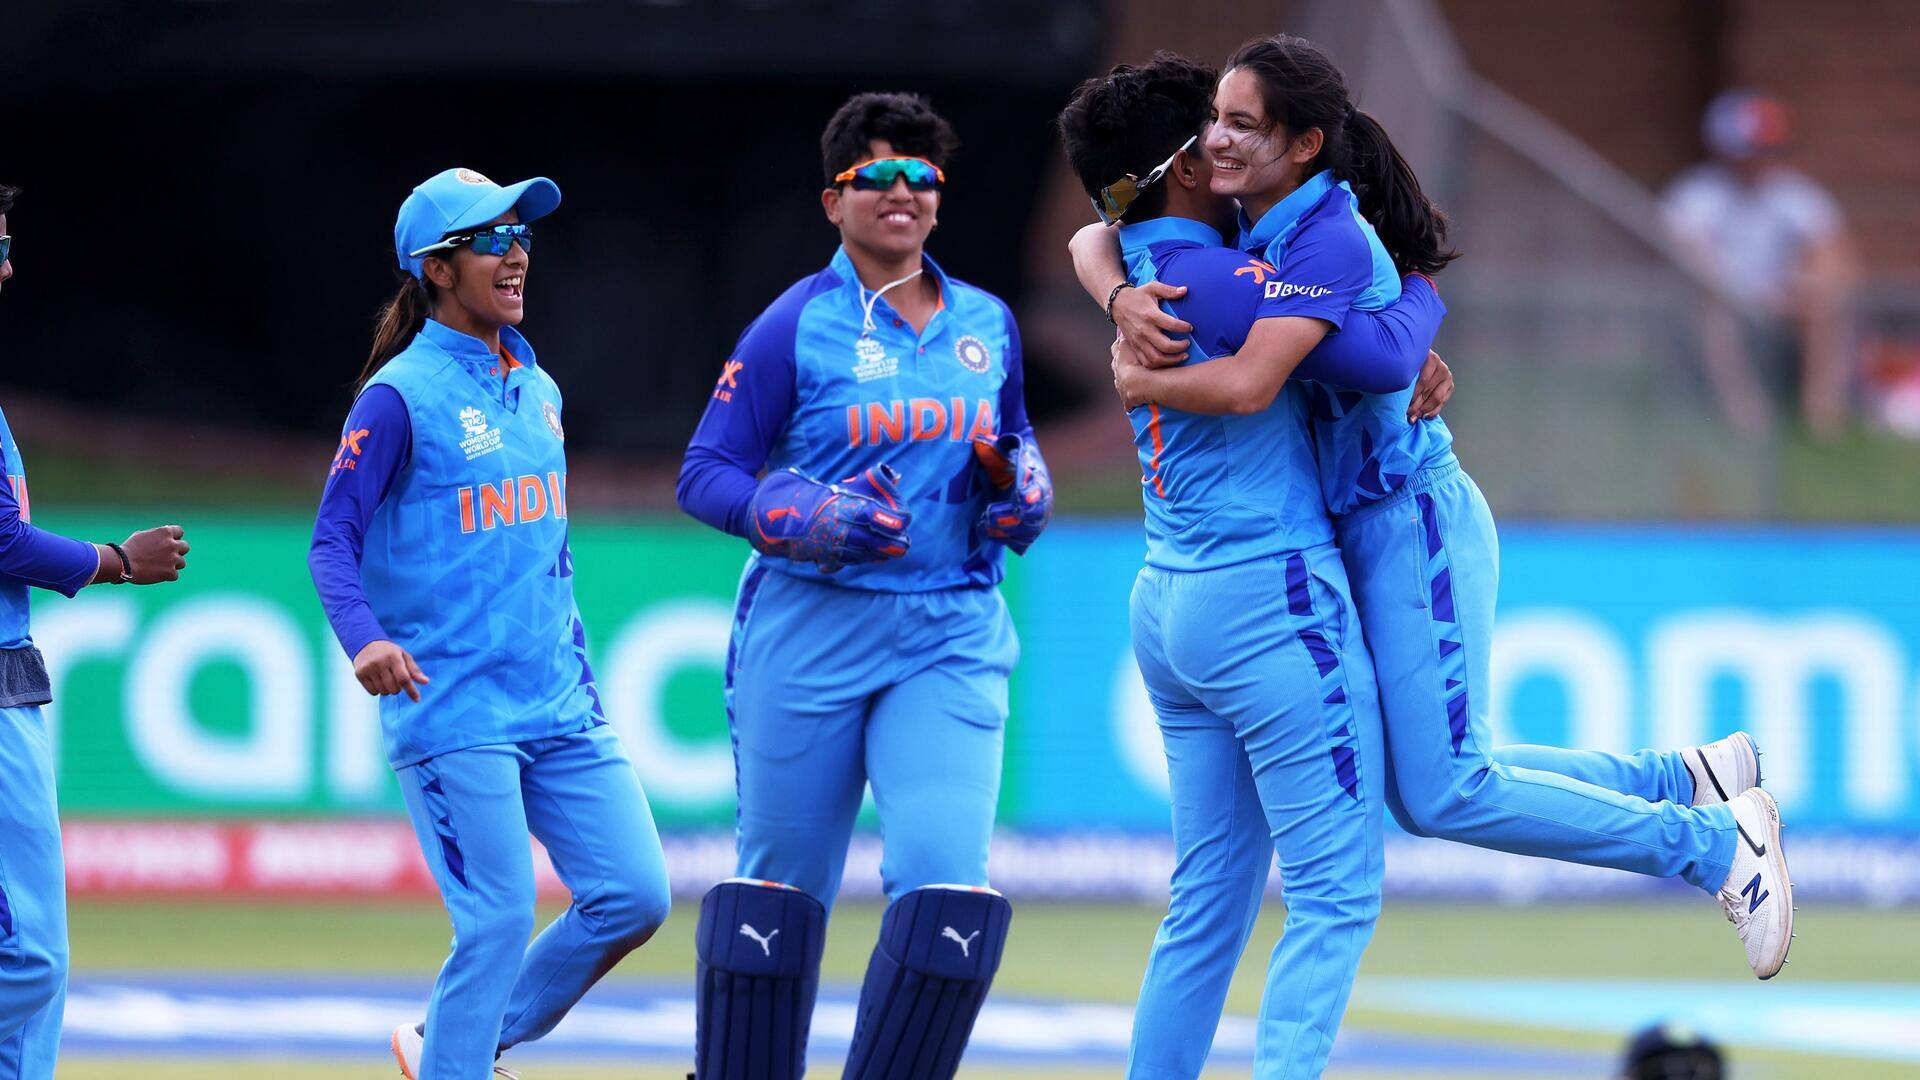 महिला टी-20 विश्व कप: भारत ने आयरलैंड को हराकर सेमीफाइनल में किया प्रवेश, बने ये रिकॉर्ड्स